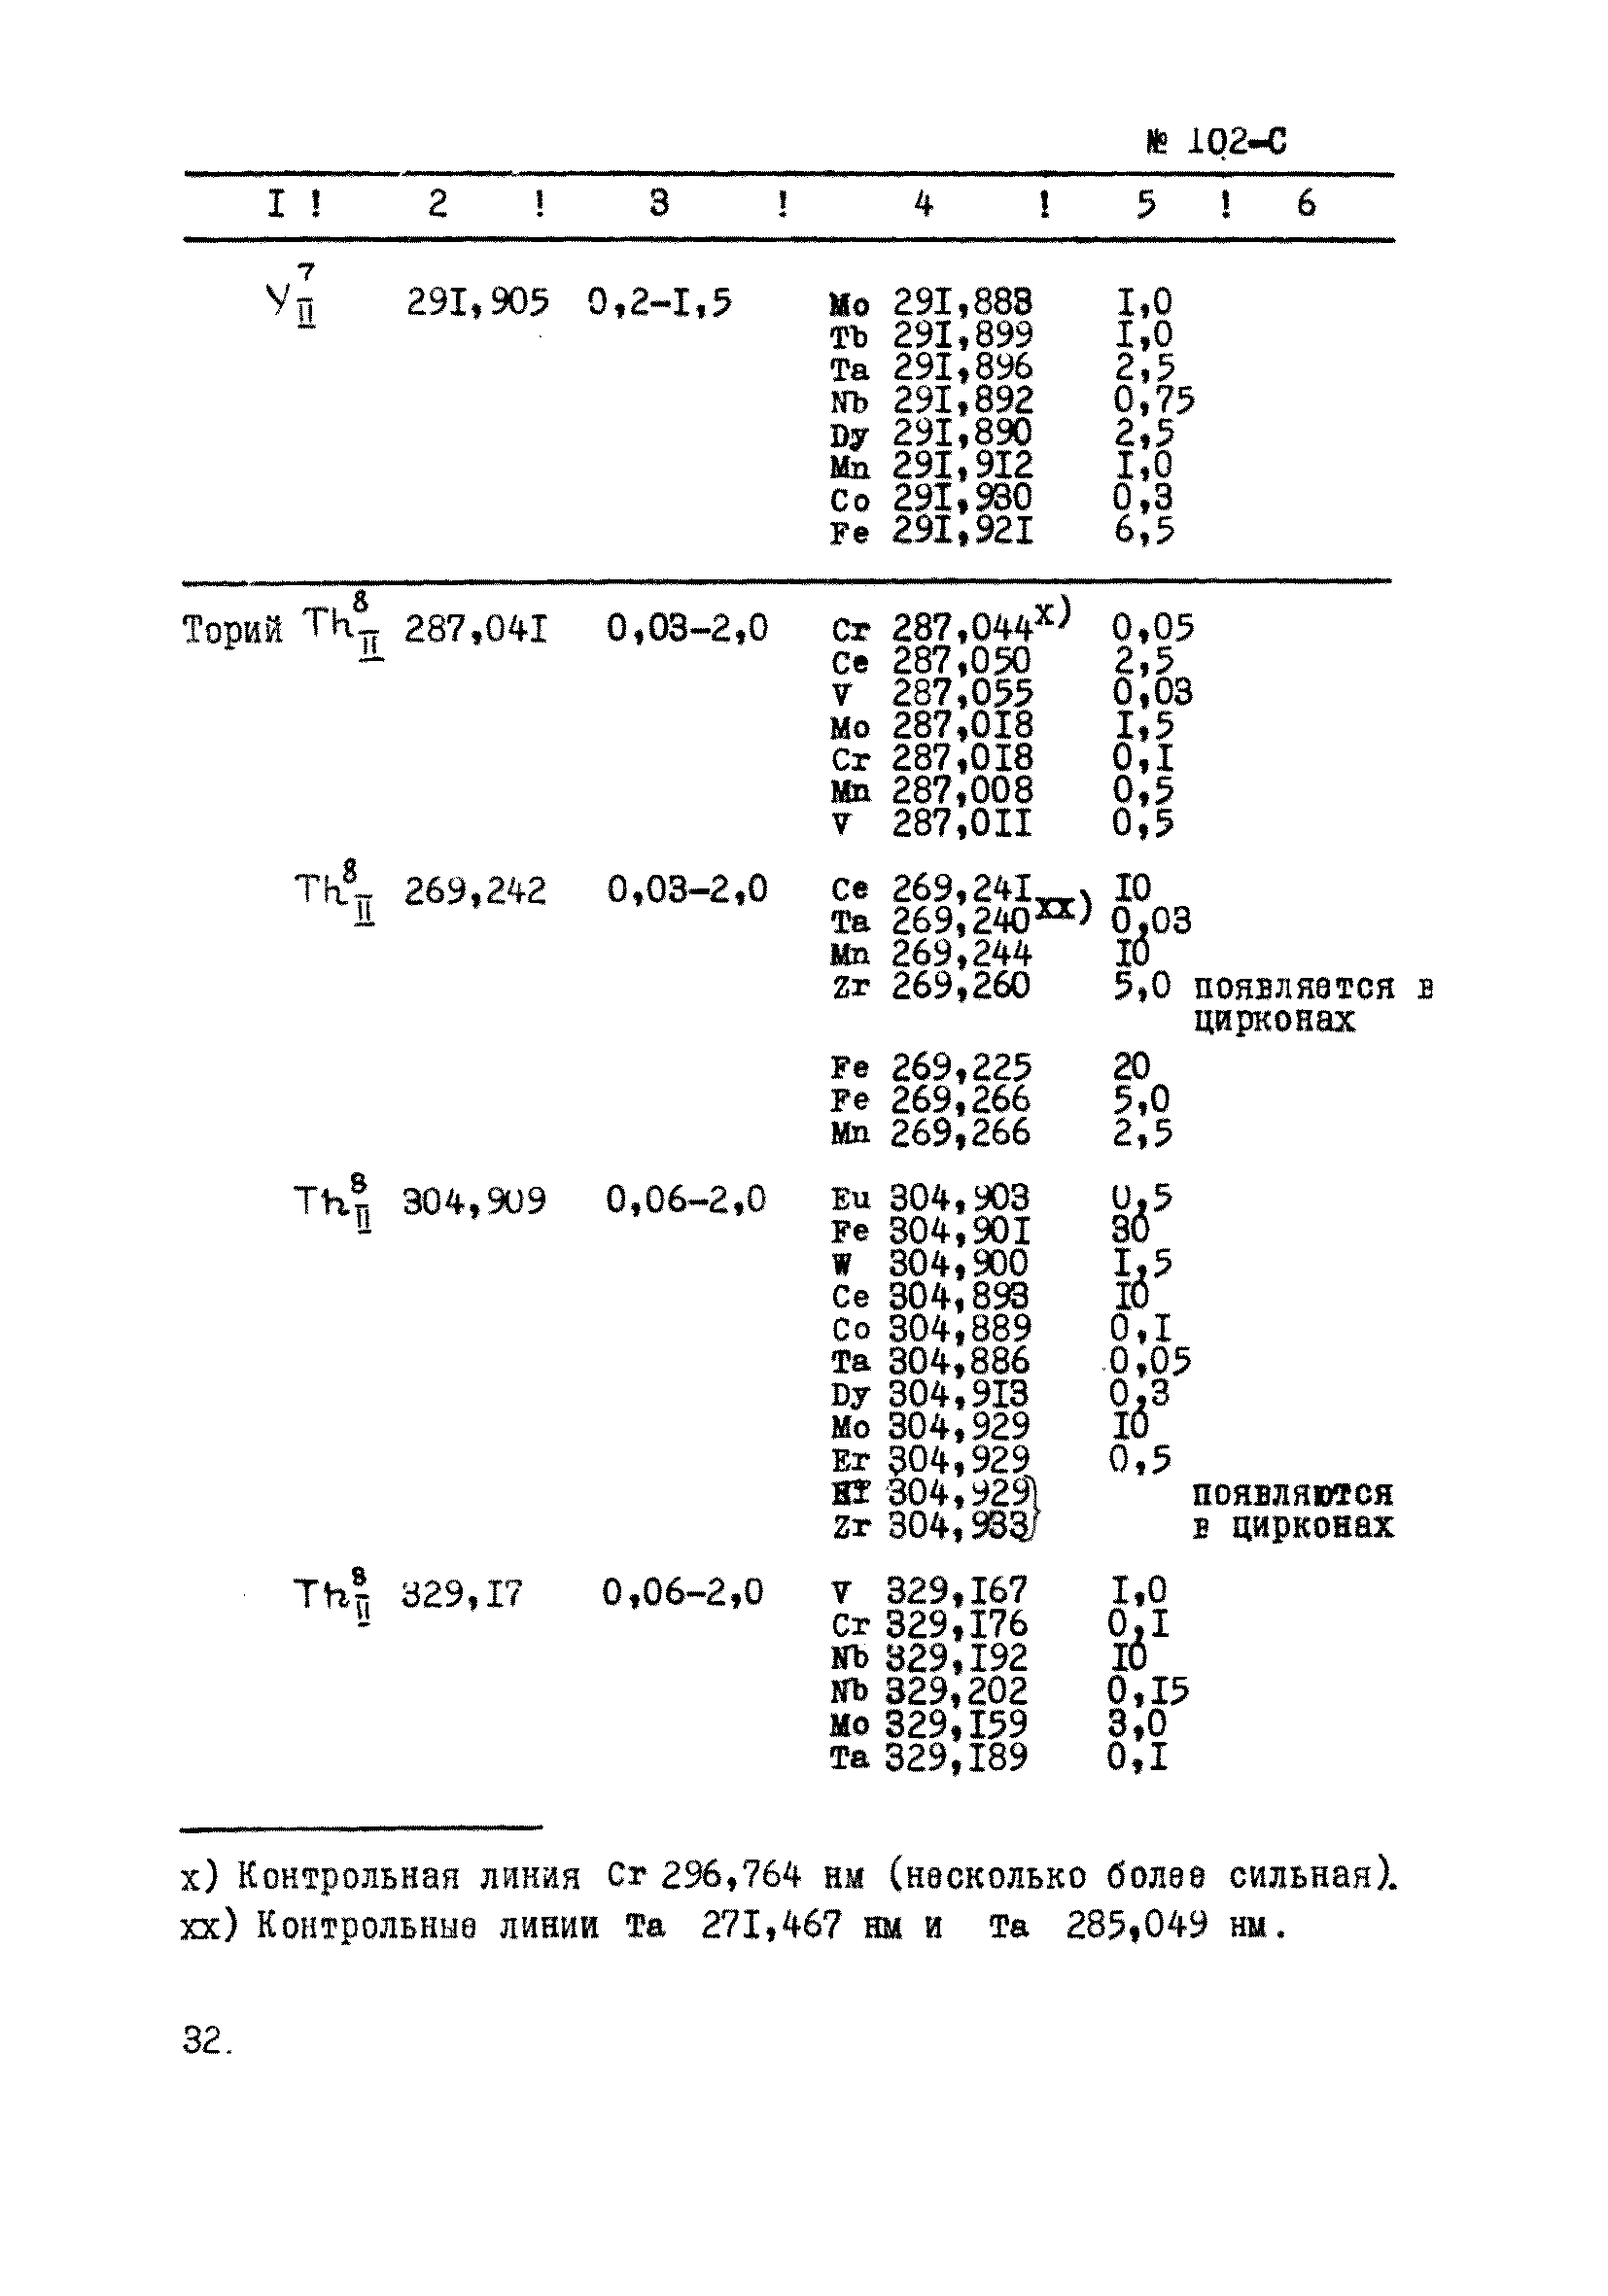 Инструкция НСАМ 102-С